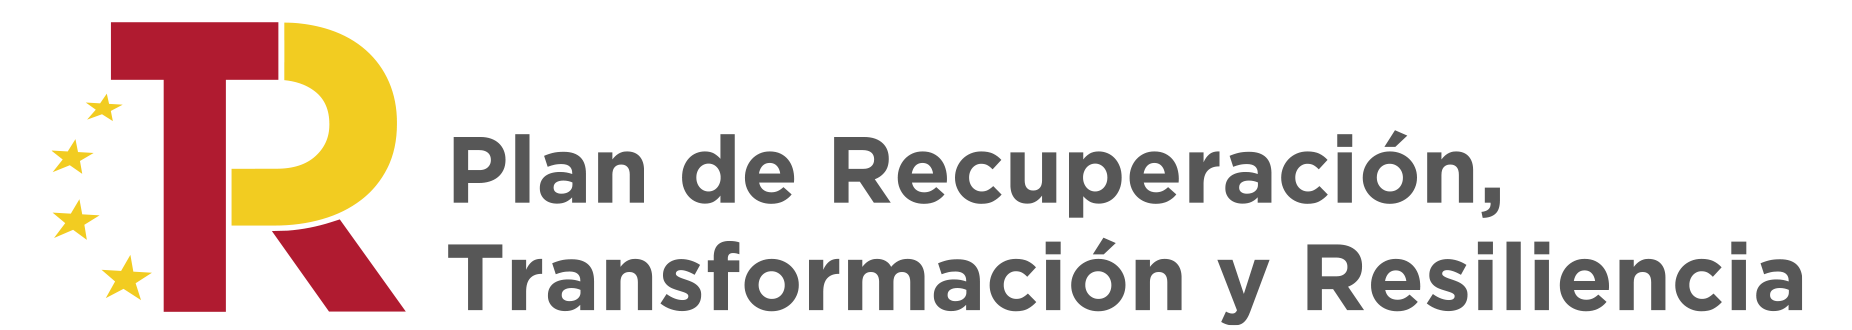 Logo Plan Recuperación Transformación Resiliencia